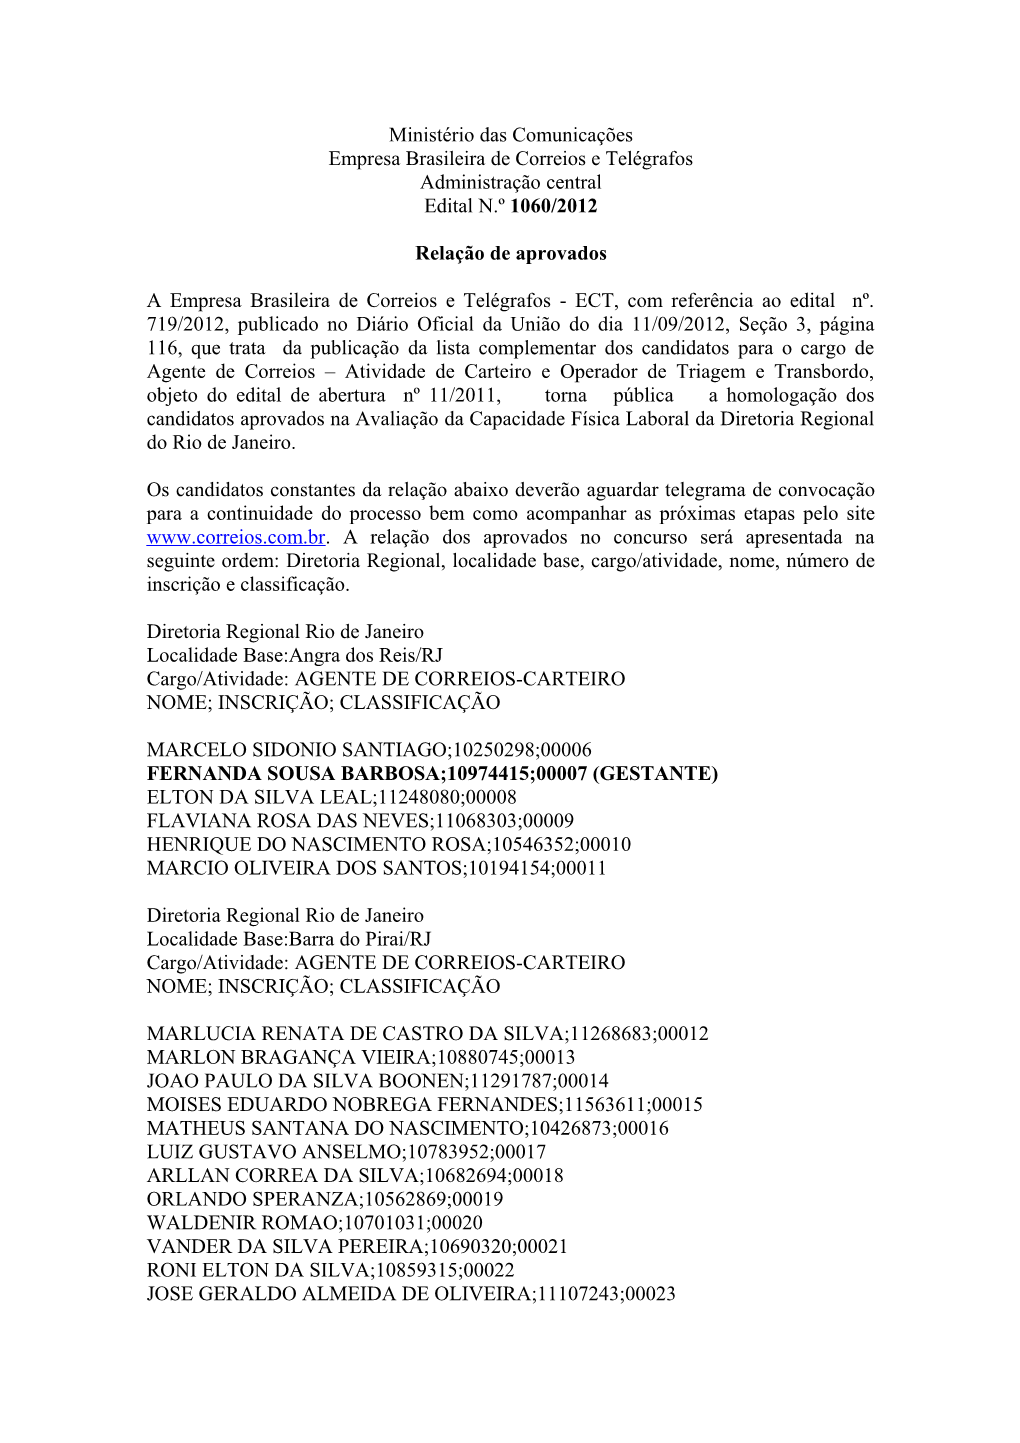 Ministério Das Comunicações Empresa Brasileira De Correios E Telégrafos Administração Central Edital N.º 1060/2012